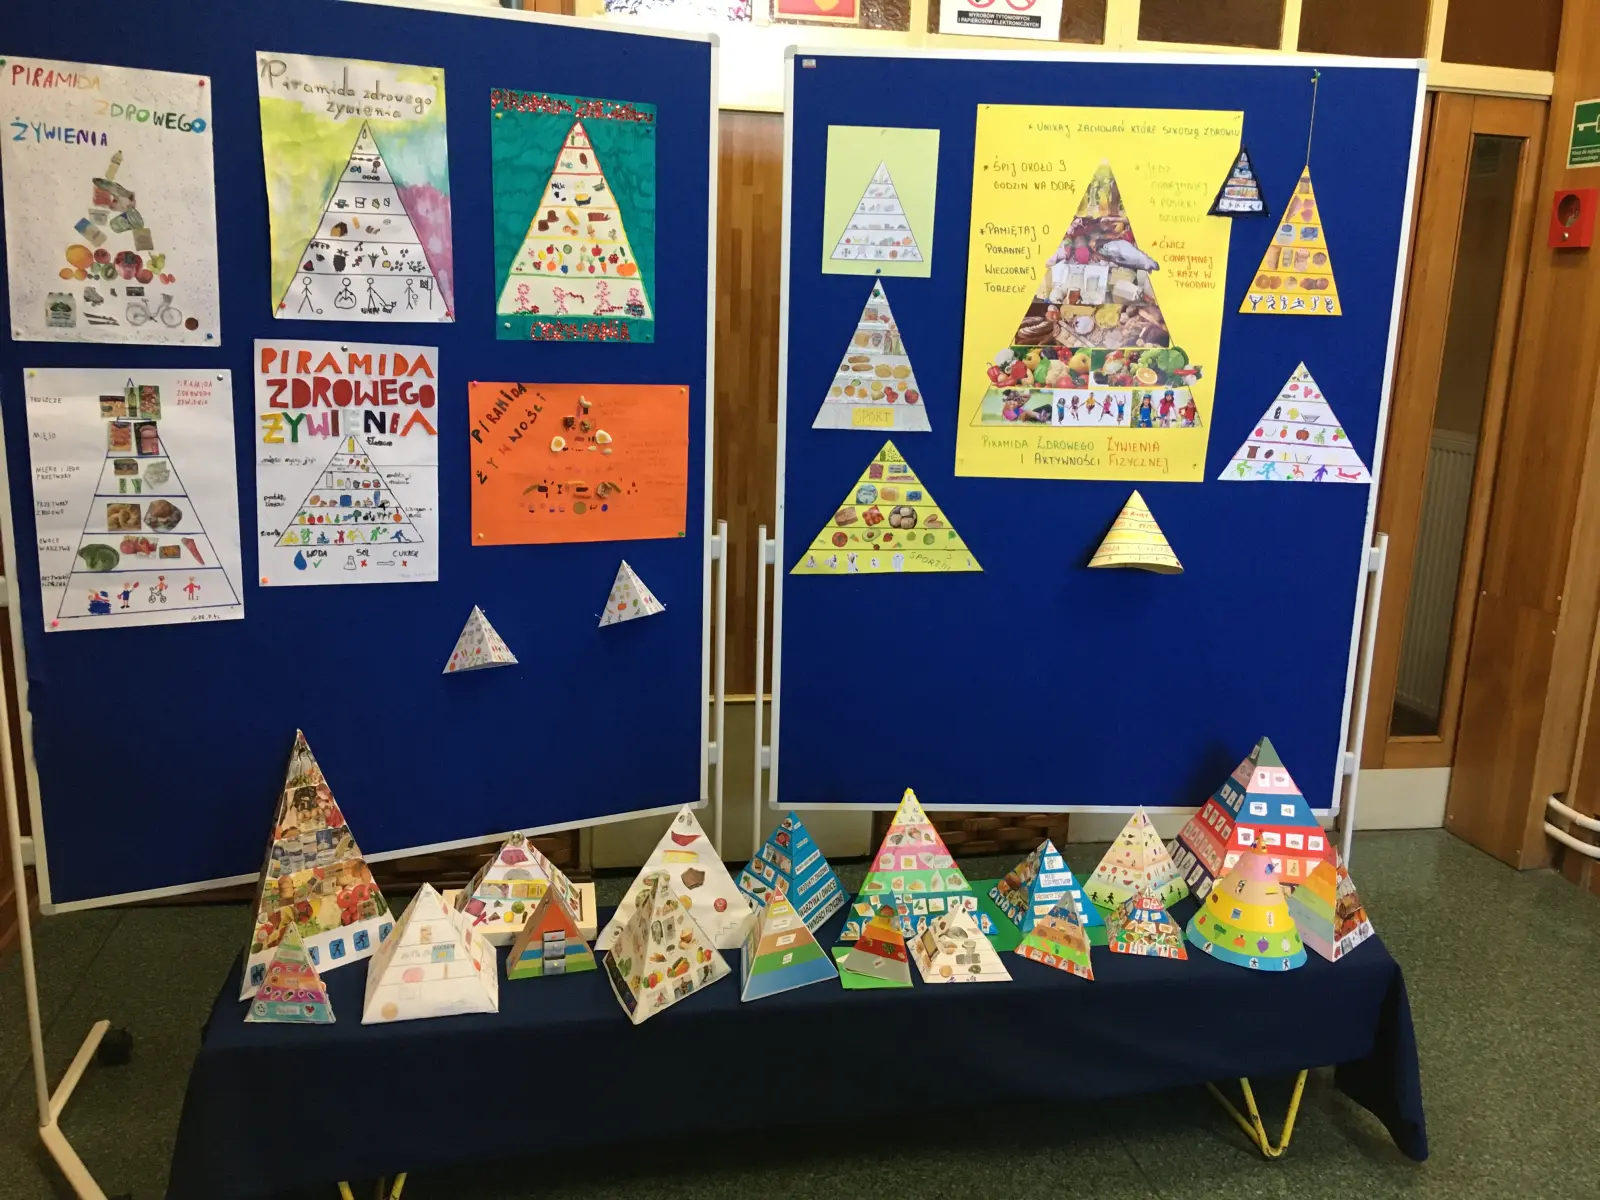 Kolorowe piramidy zdrowego odżywiania wykonane przez uczniów klas czwartych